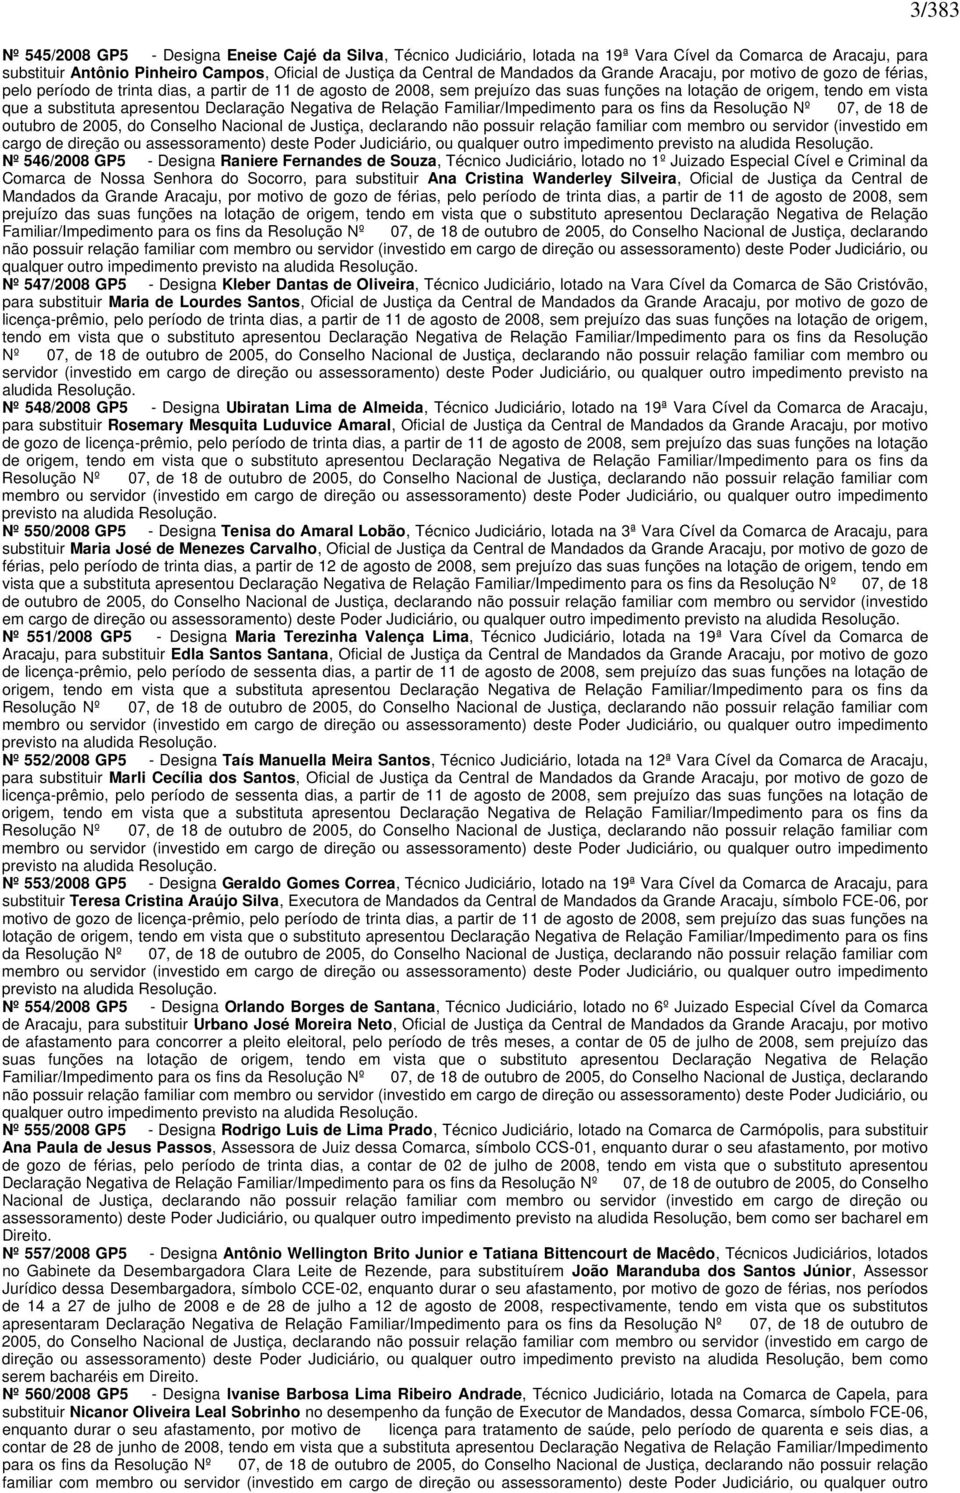 substituta apresentou Declaração Negativa de Relação Familiar/Impedimento para os fins da Resolução Nº 07, de 18 de outubro de 2005, do Conselho Nacional de Justiça, declarando não possuir relação